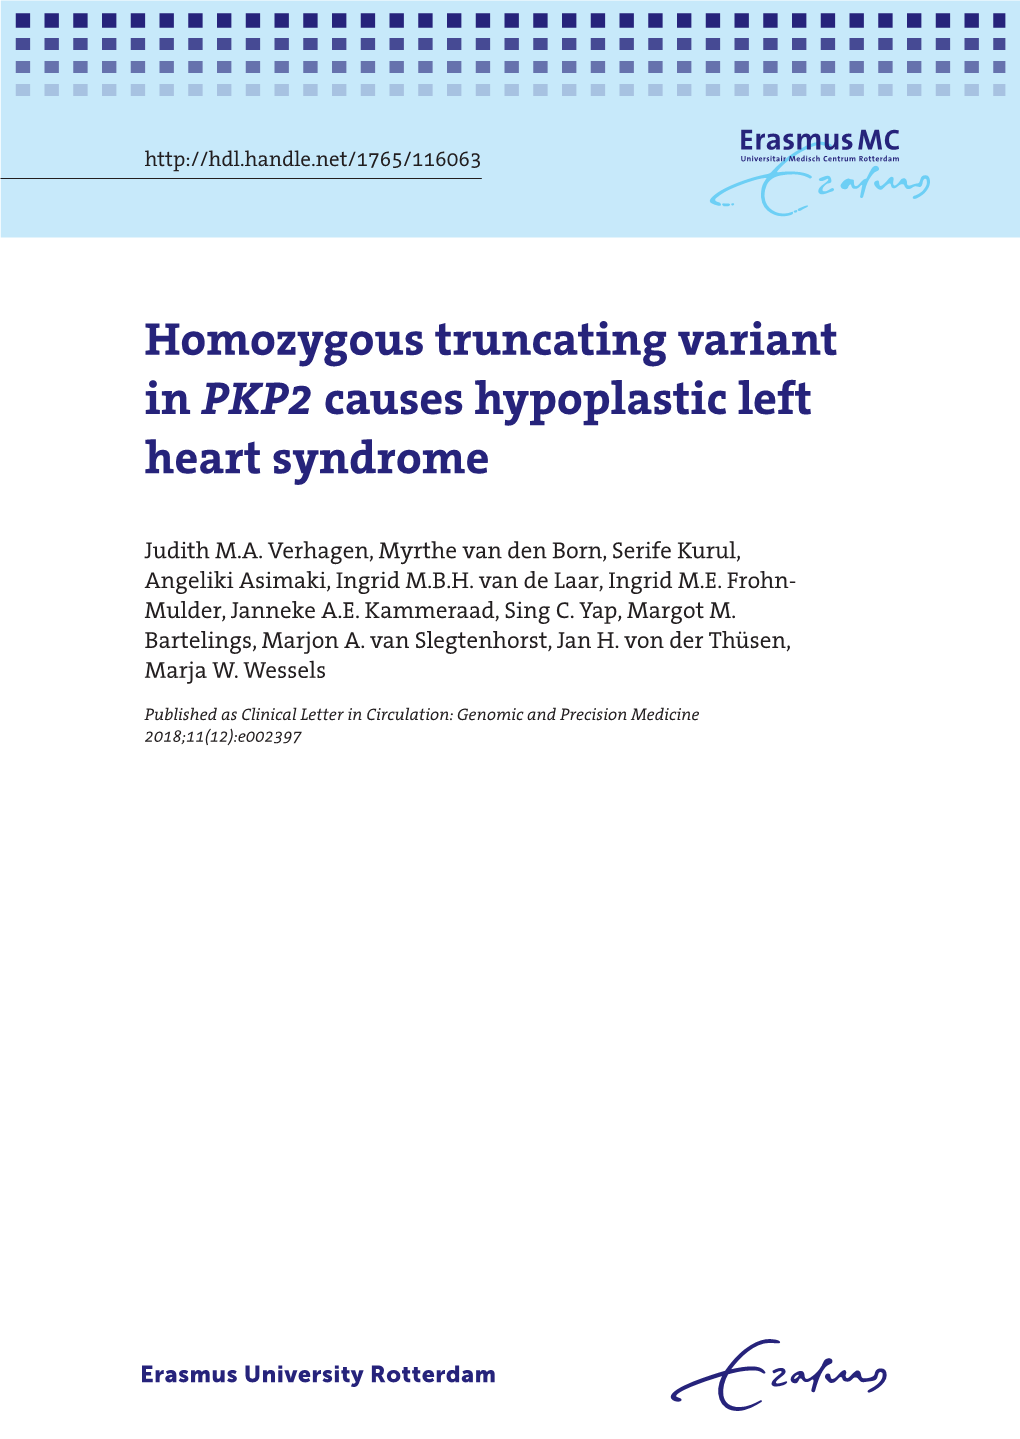 Homozygous Truncating Variant in PKP2 Causes Hypoplastic Left Heart Syndrome 1